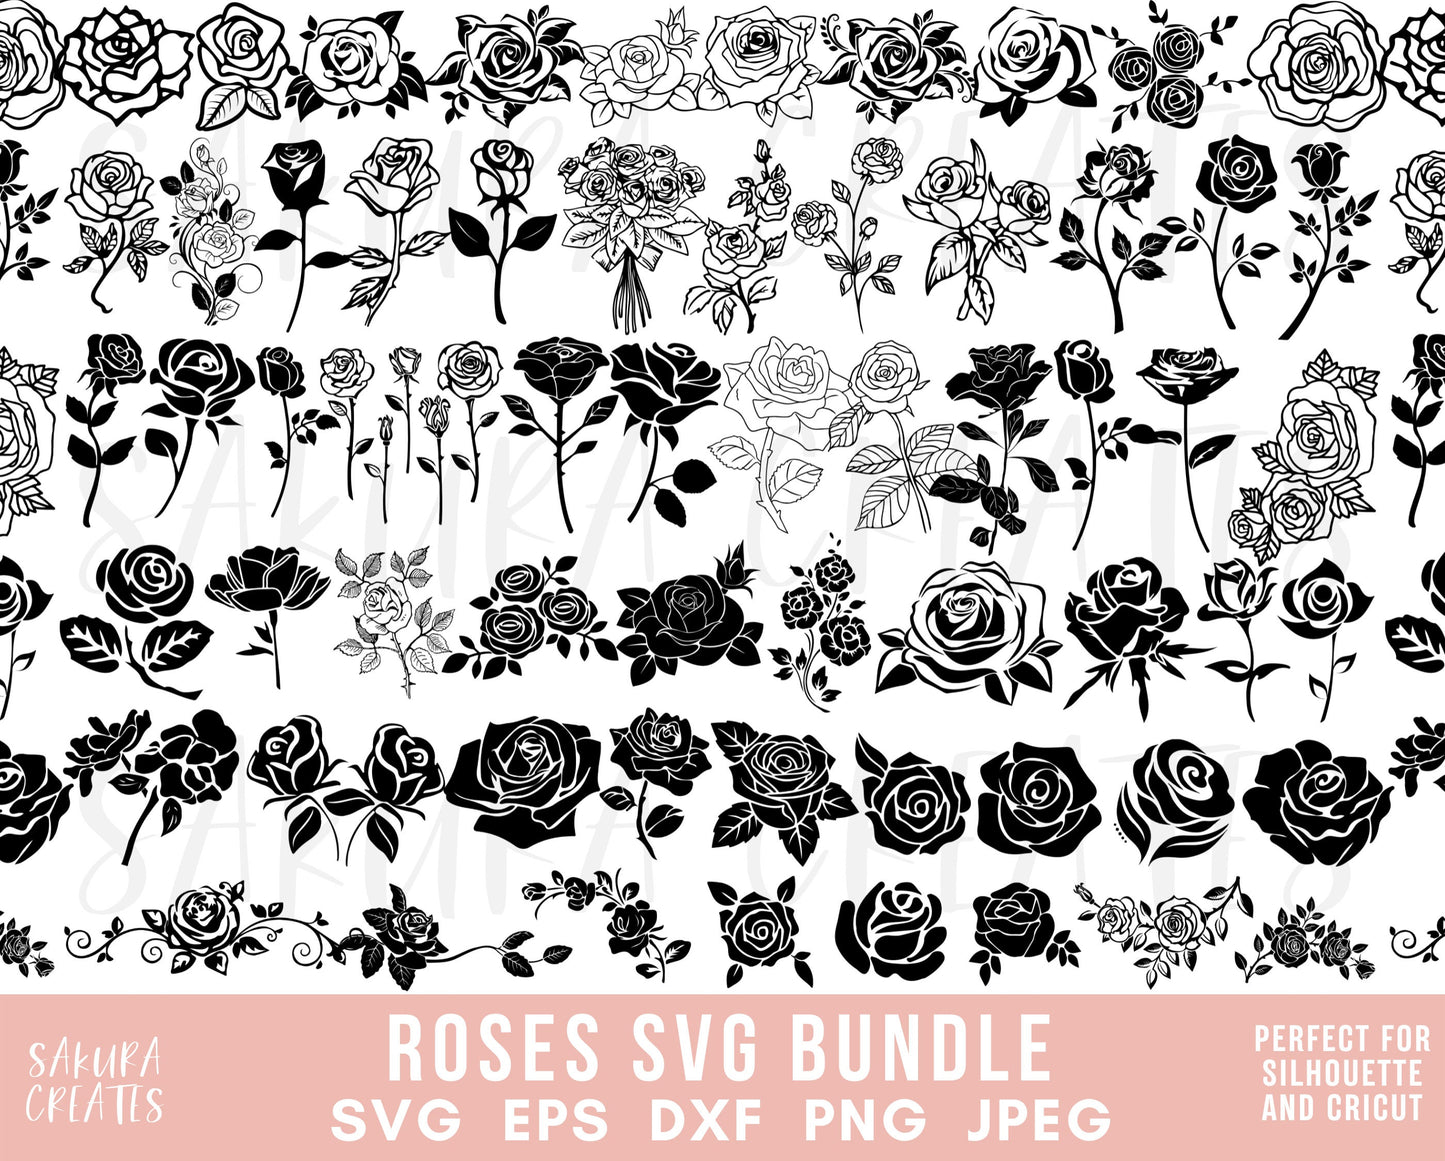 60 ROSE SVG Bundle ROSES Svg Bundle Rose Clipart Svg cut files for